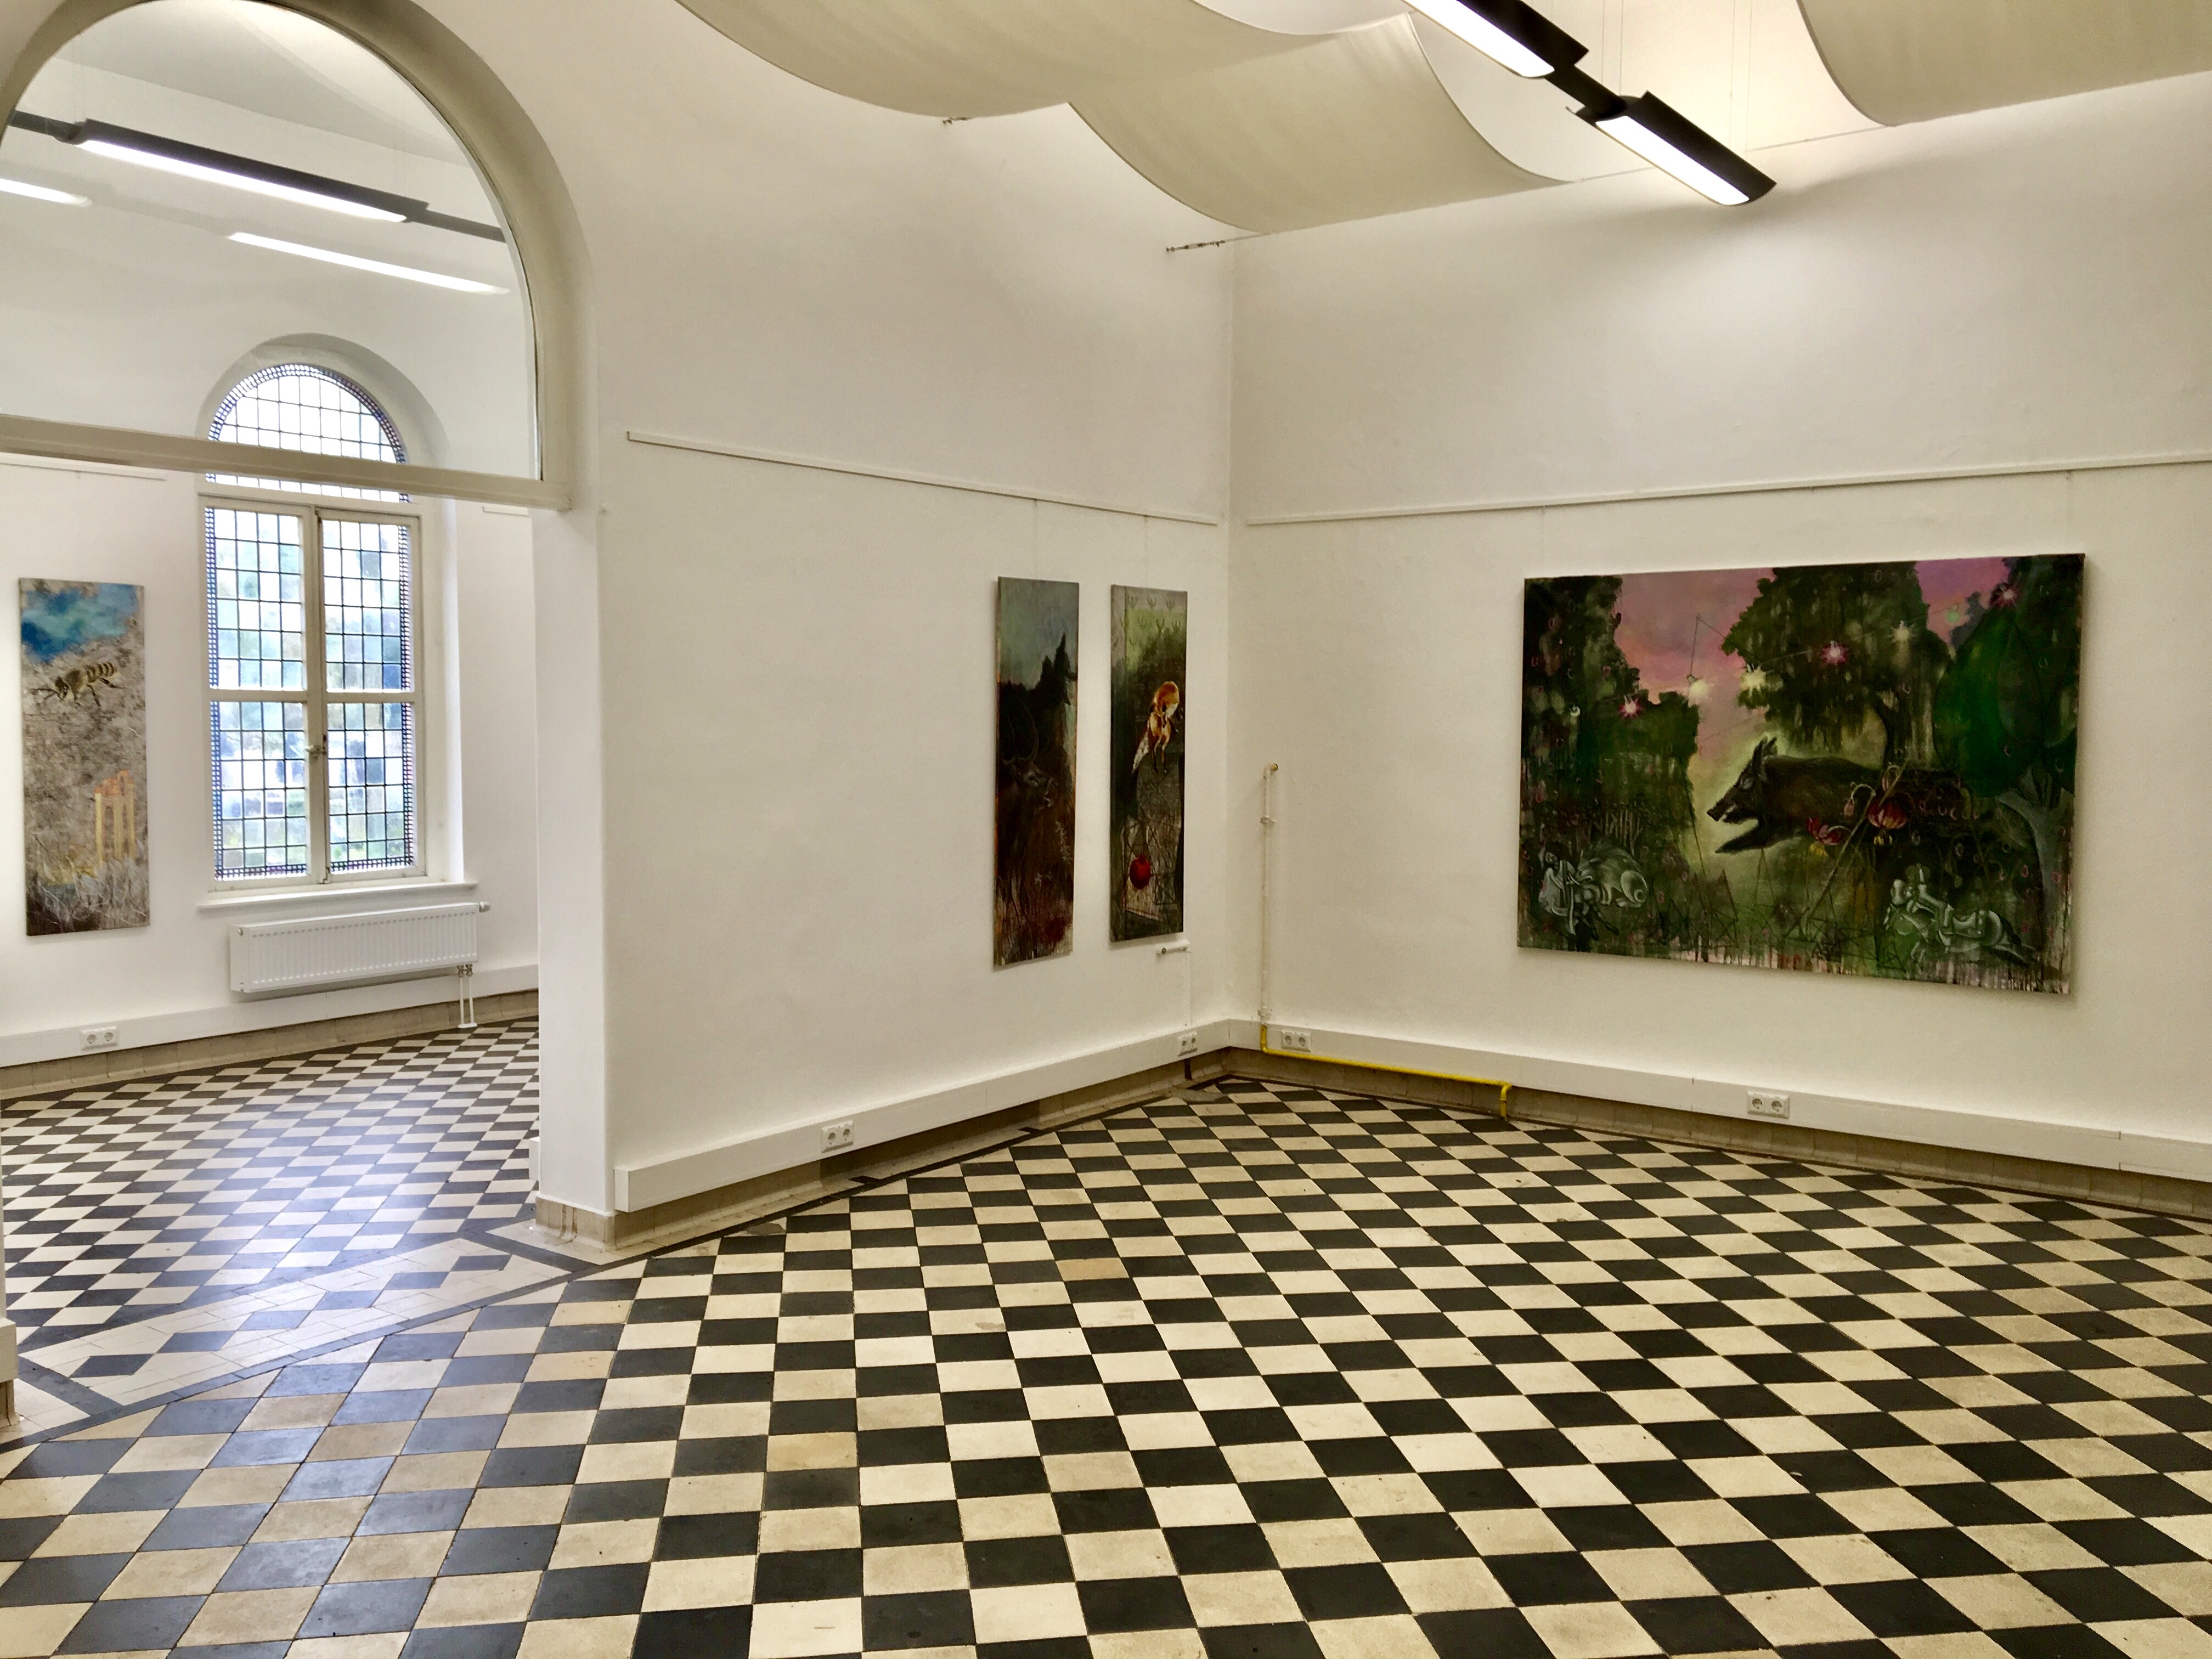 Torhaus Galerie, Göttingen, Germany 2018